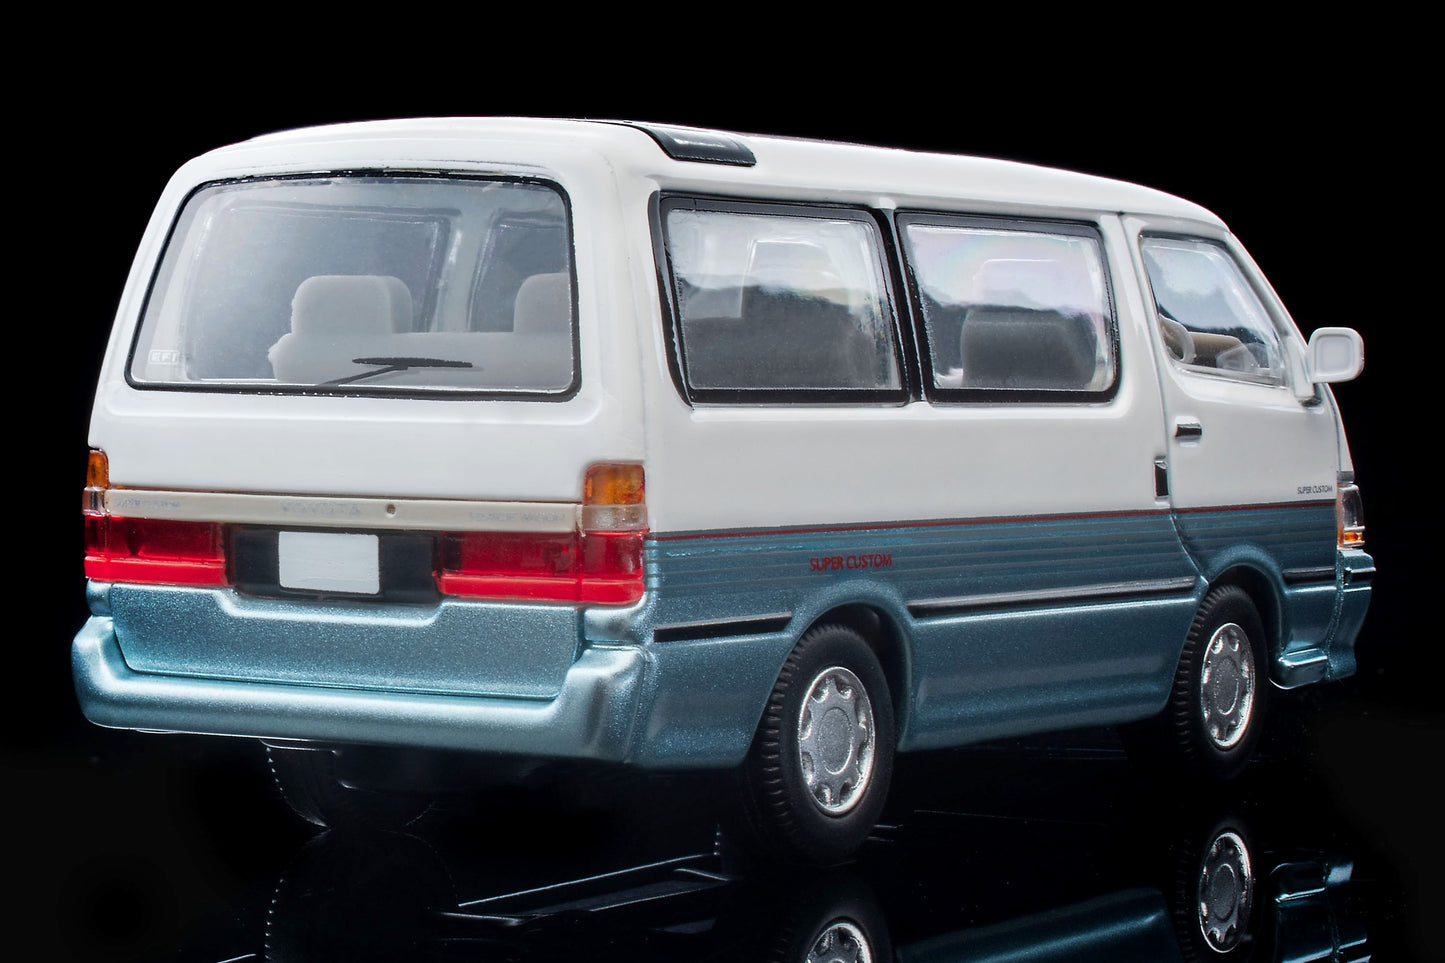 【2024年6月発売予定】 TLV 1/64 LV-N208d トヨタ ハイエースワゴン スーパーカスタム (白/水色) 90年式